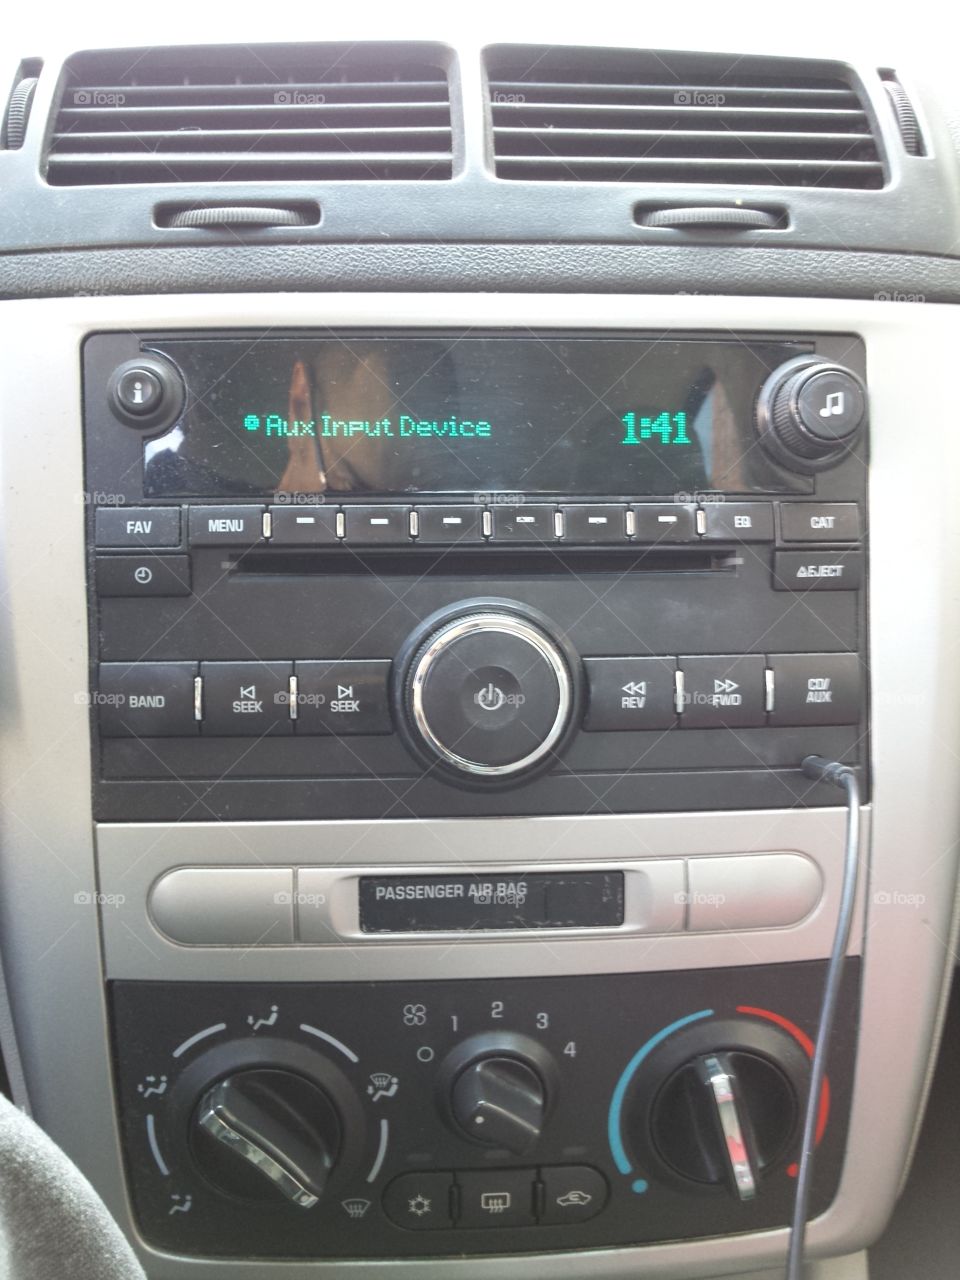 Car radio, in a car.